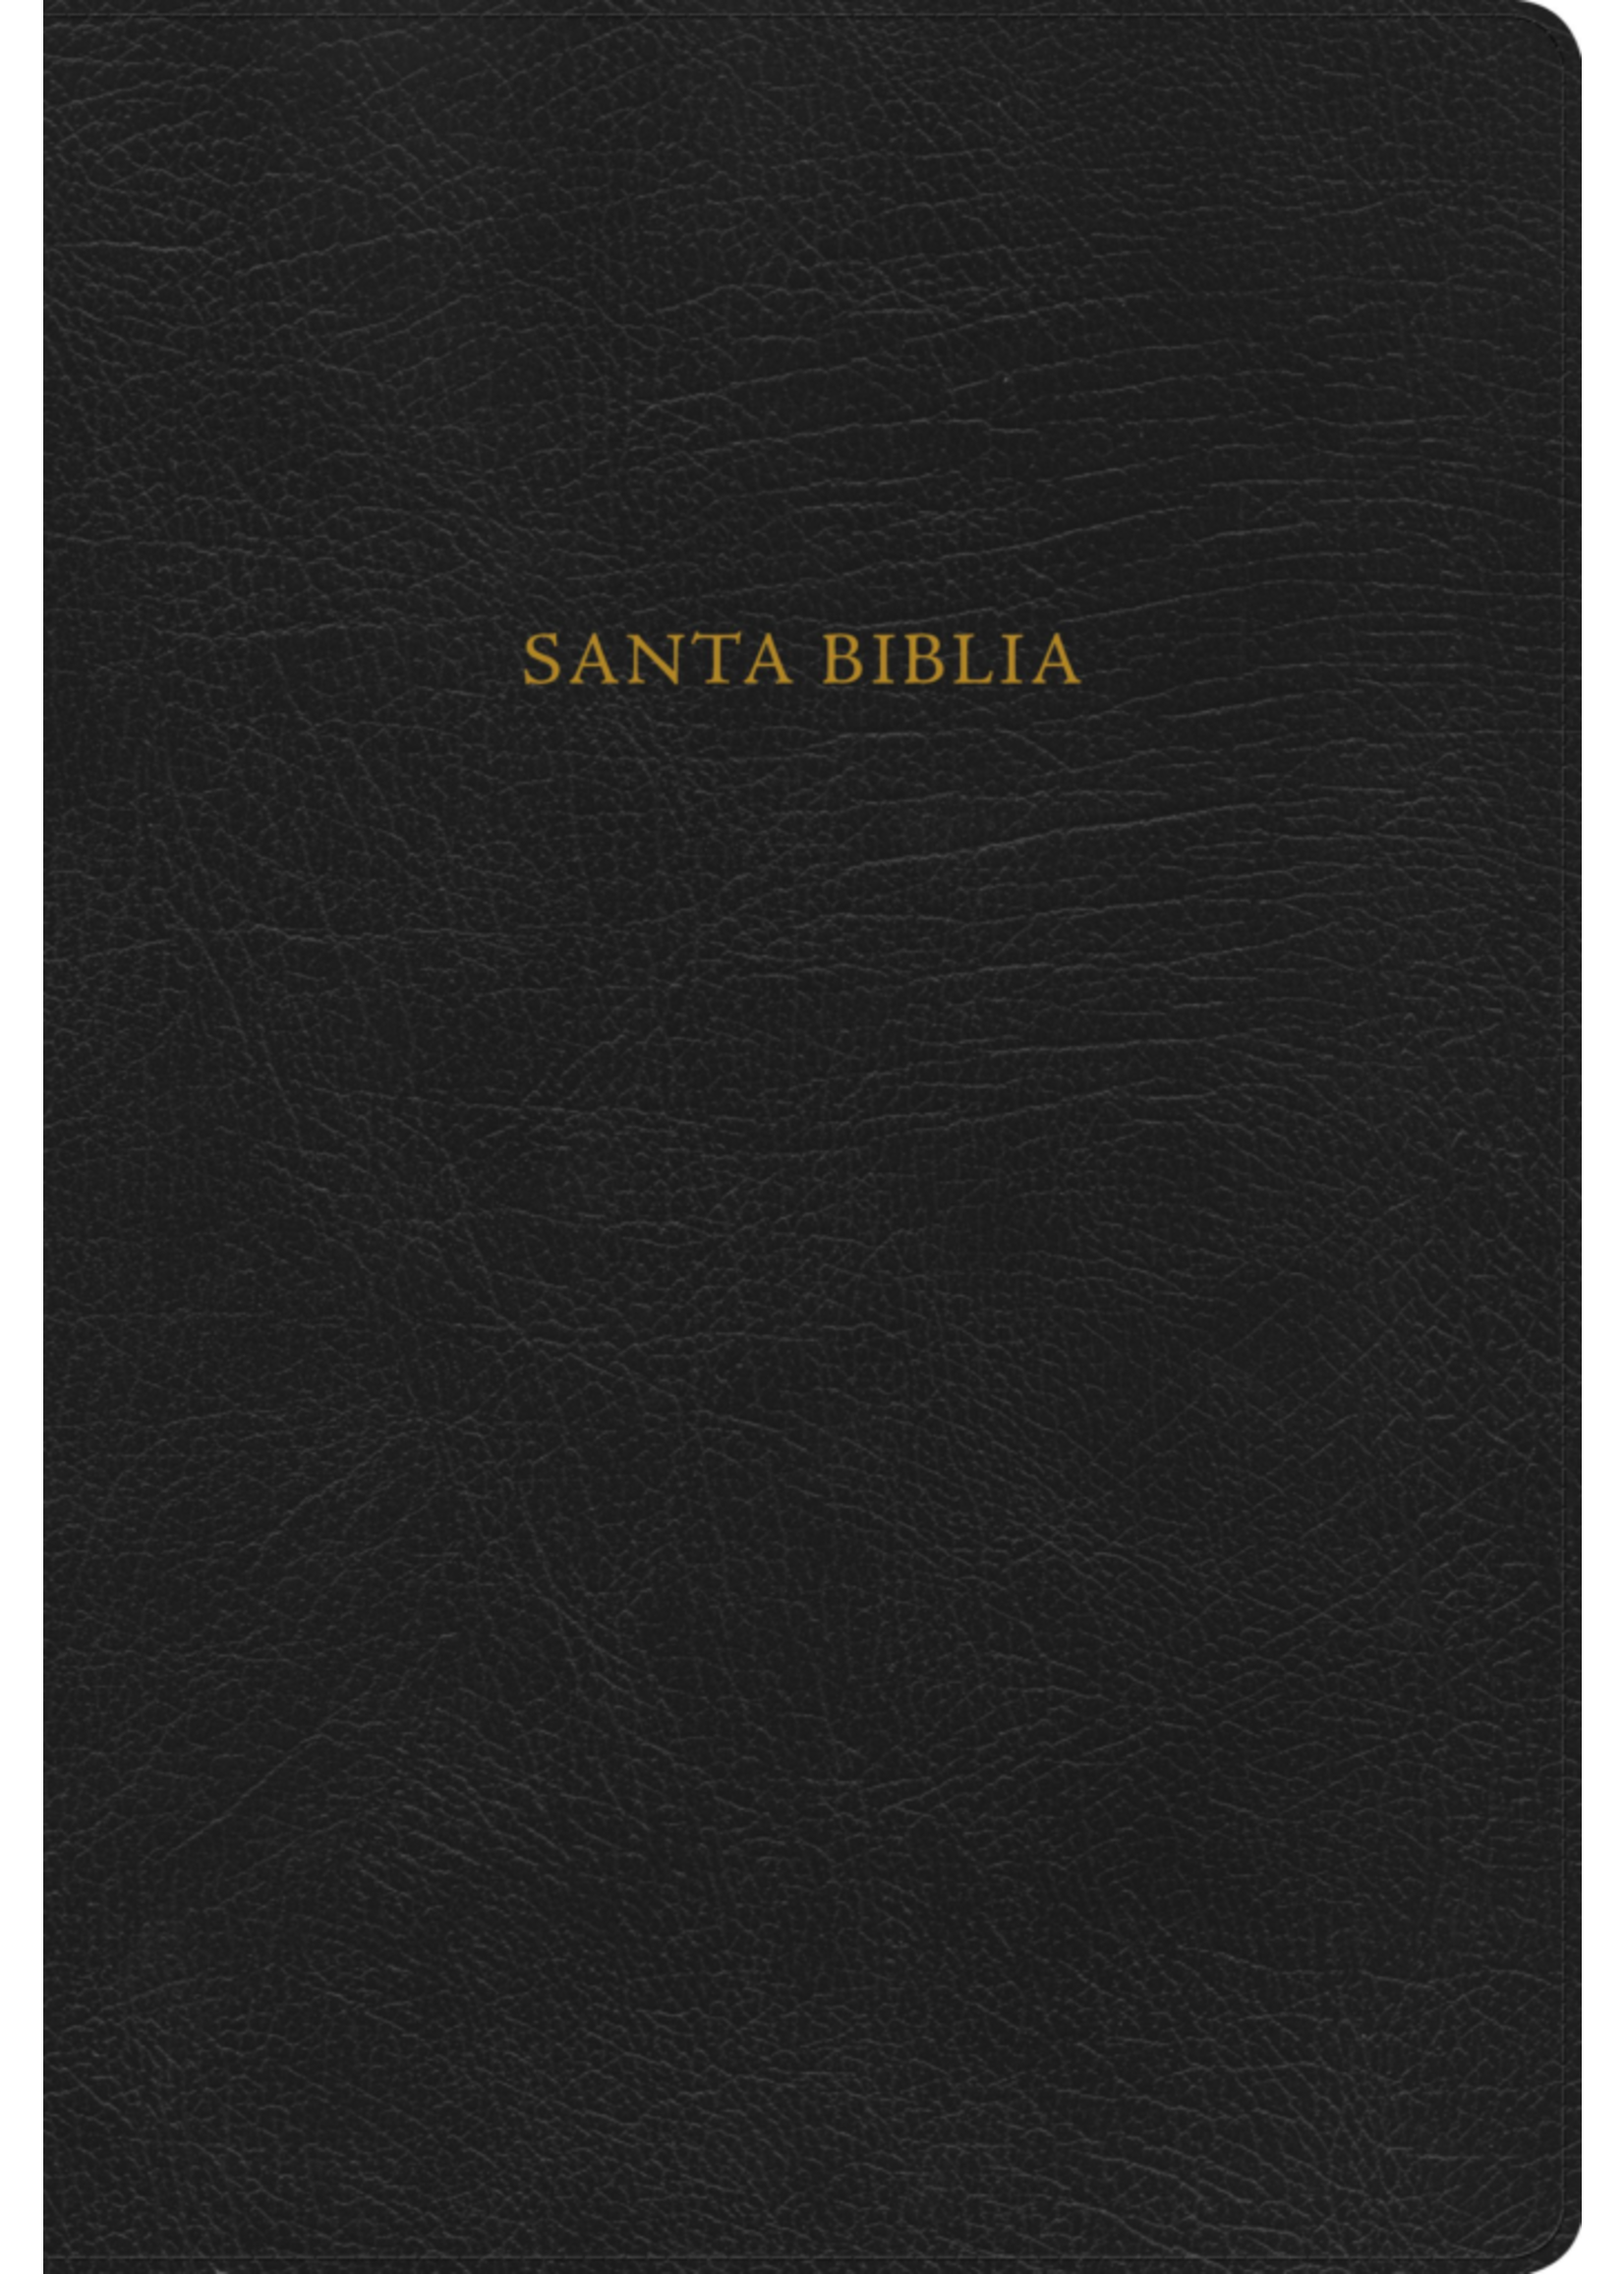 RVR 1960 Nueva Biblia de Estudio Scofield negro, piel fabricada